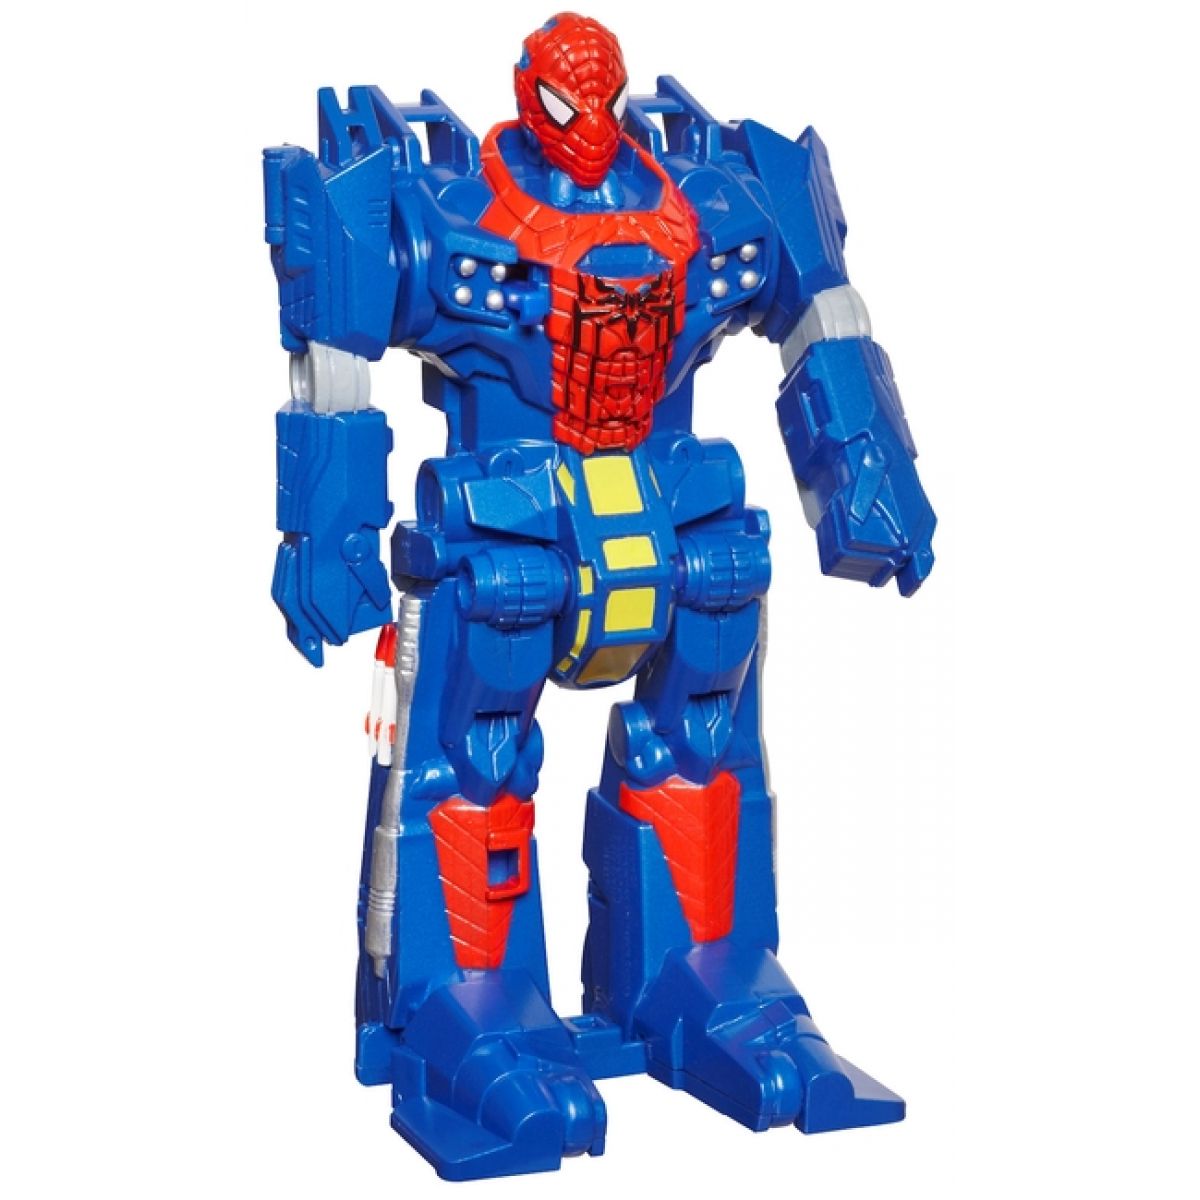 Spiderman akční figurky s tranformací Hasbro 37219 - Spider Truck